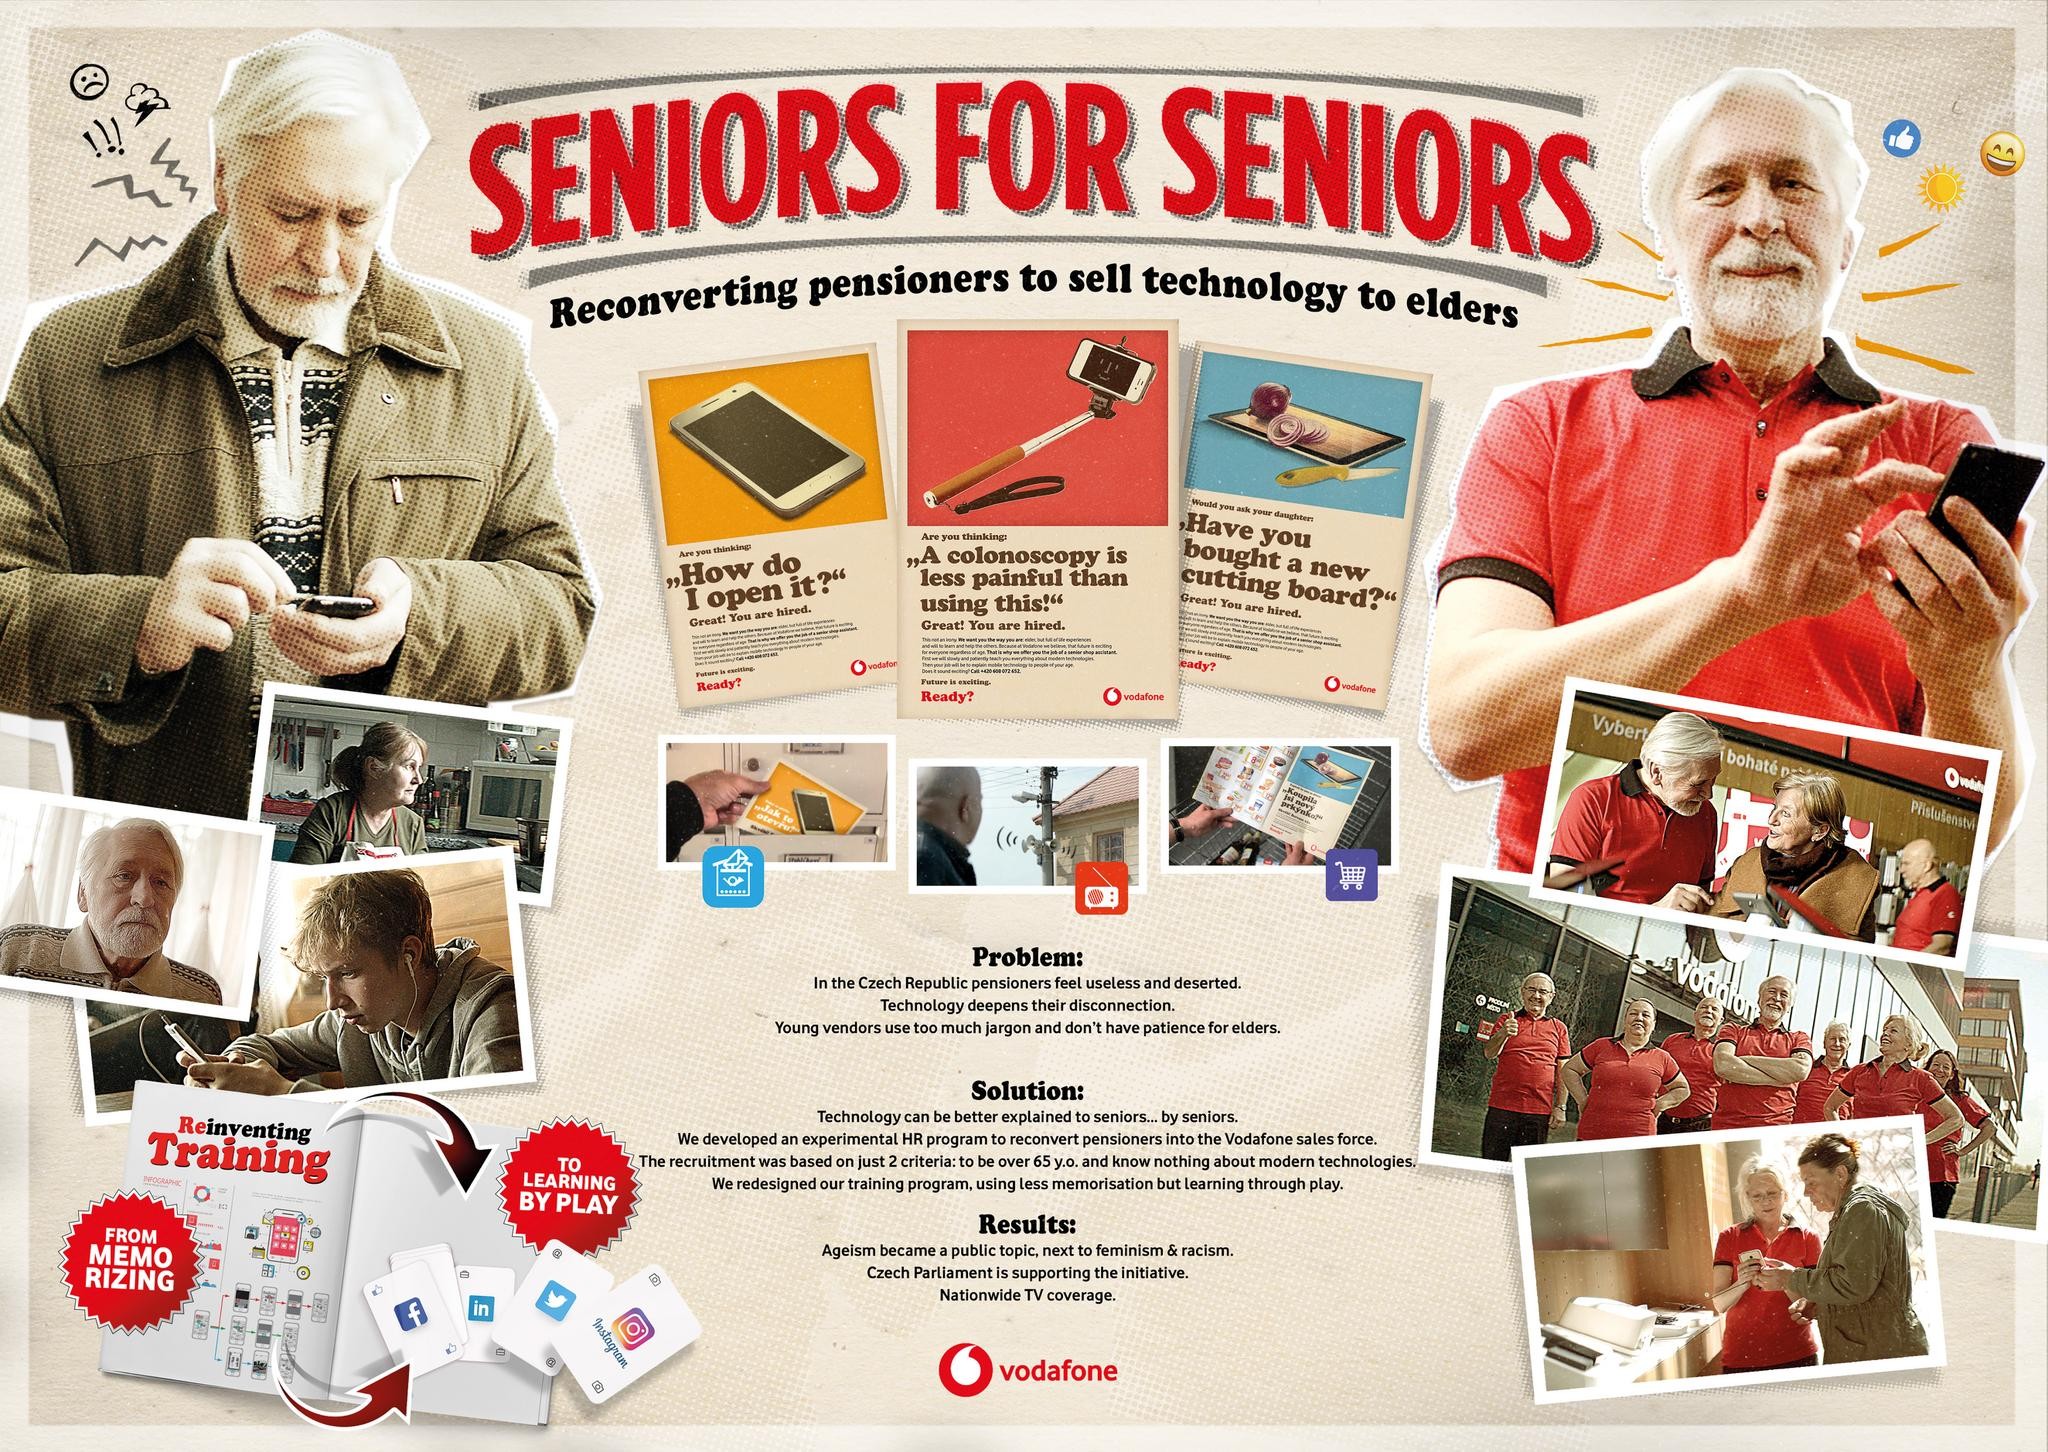 Seniors for seniors